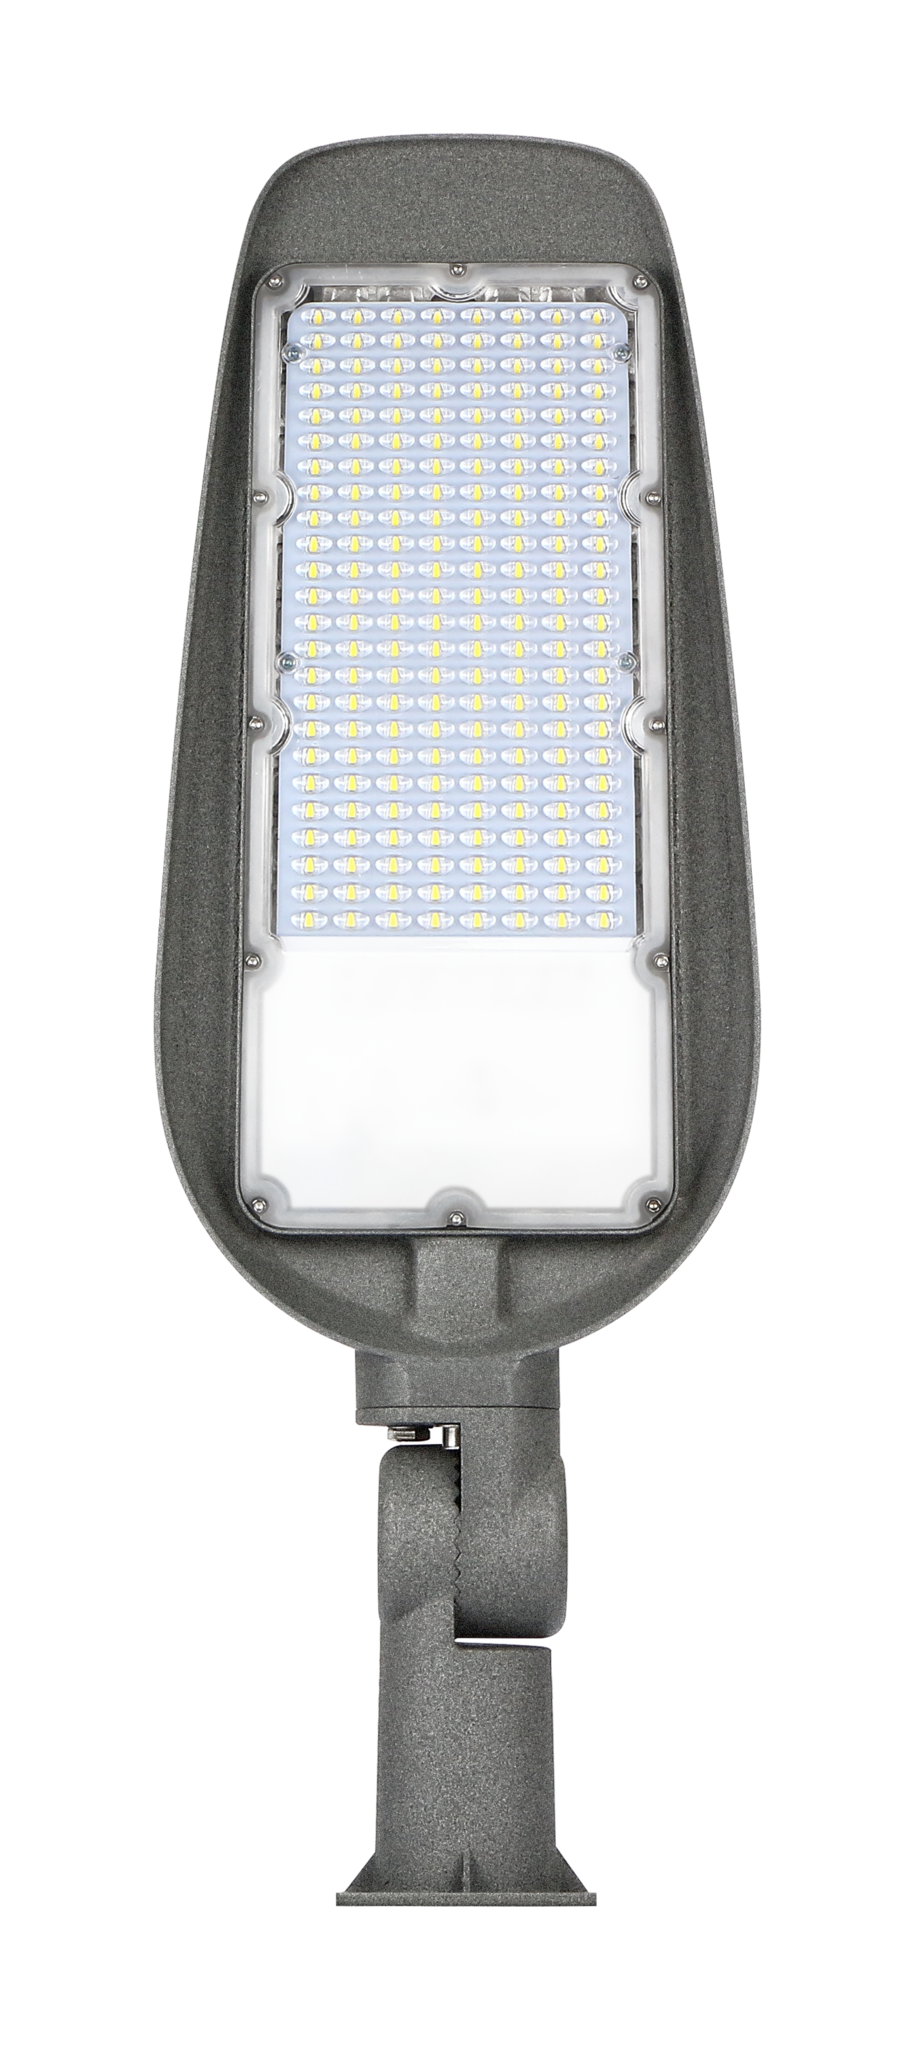 LED Straatlamp kopen? Ruime voorraad en lage prijzen